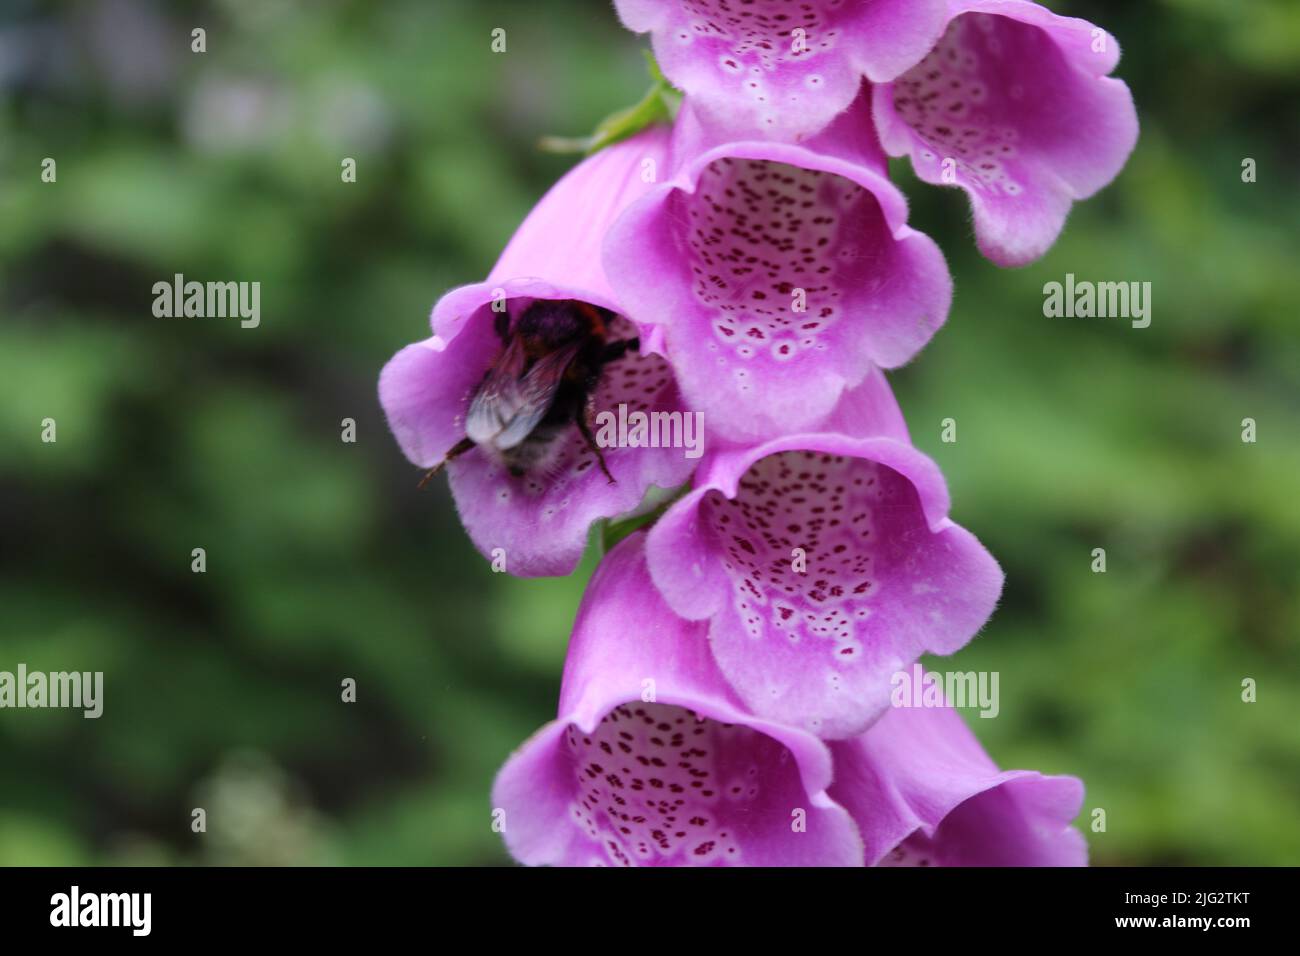 Un gros plan extrême à l'aide d'un objectif macro. La photo est d'une abeille pollinisateurs une fleur de hollyhock rose dans un jardin. Le détail des pétales est visible. Banque D'Images